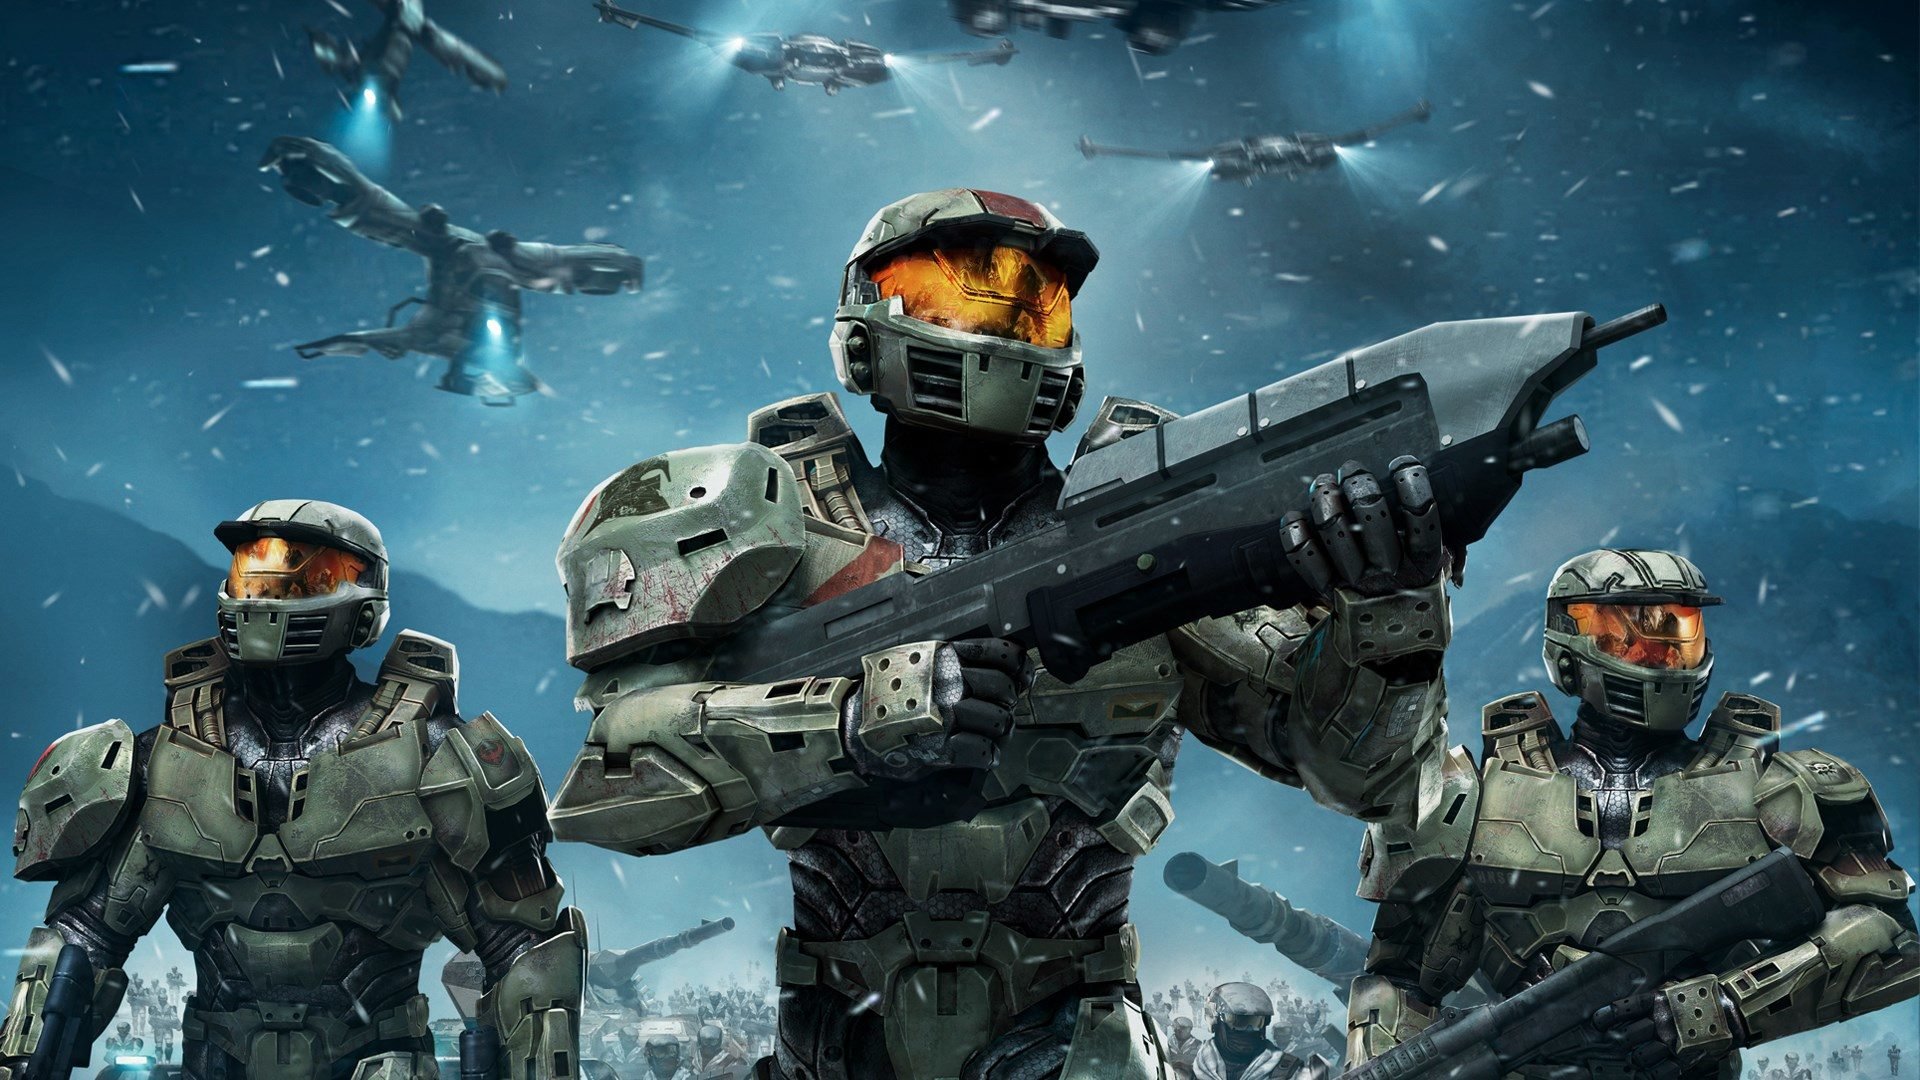 Halo': Personagens se reúnem no cartaz INÉDITO da série; Confira